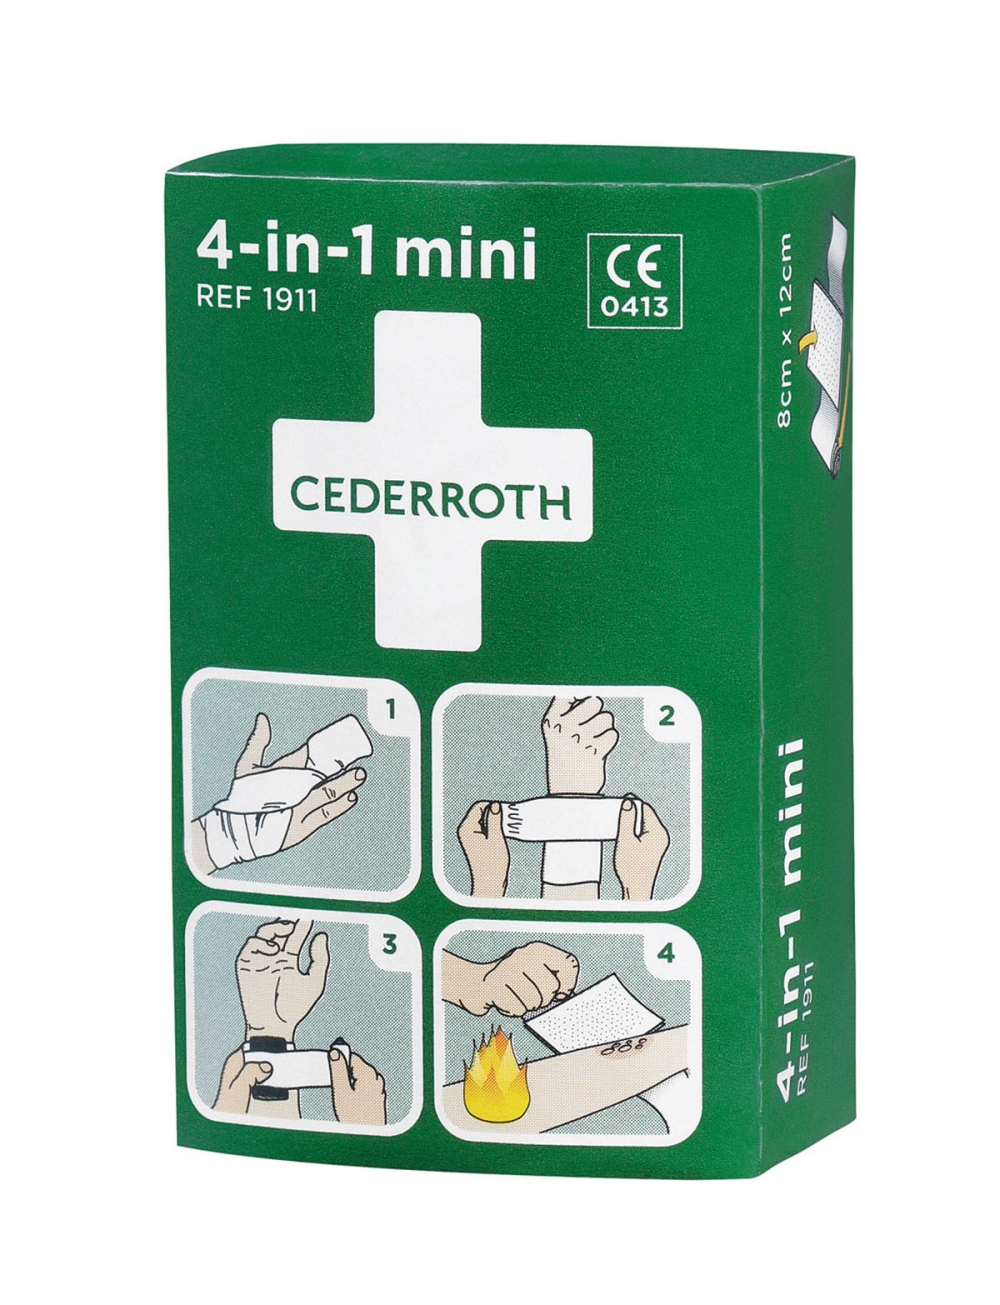 Cederroth 4-in-1 mini blodstopper er en liten, smidig og steril førstehjelpsbandasje som egner seg spesielt for skader på fingre og tær.Blodstopper liten inneholder 1 stk. spesialkompress 8 x 12 cm og 1 stk. elastisk bind 6 cm x 3 m.
